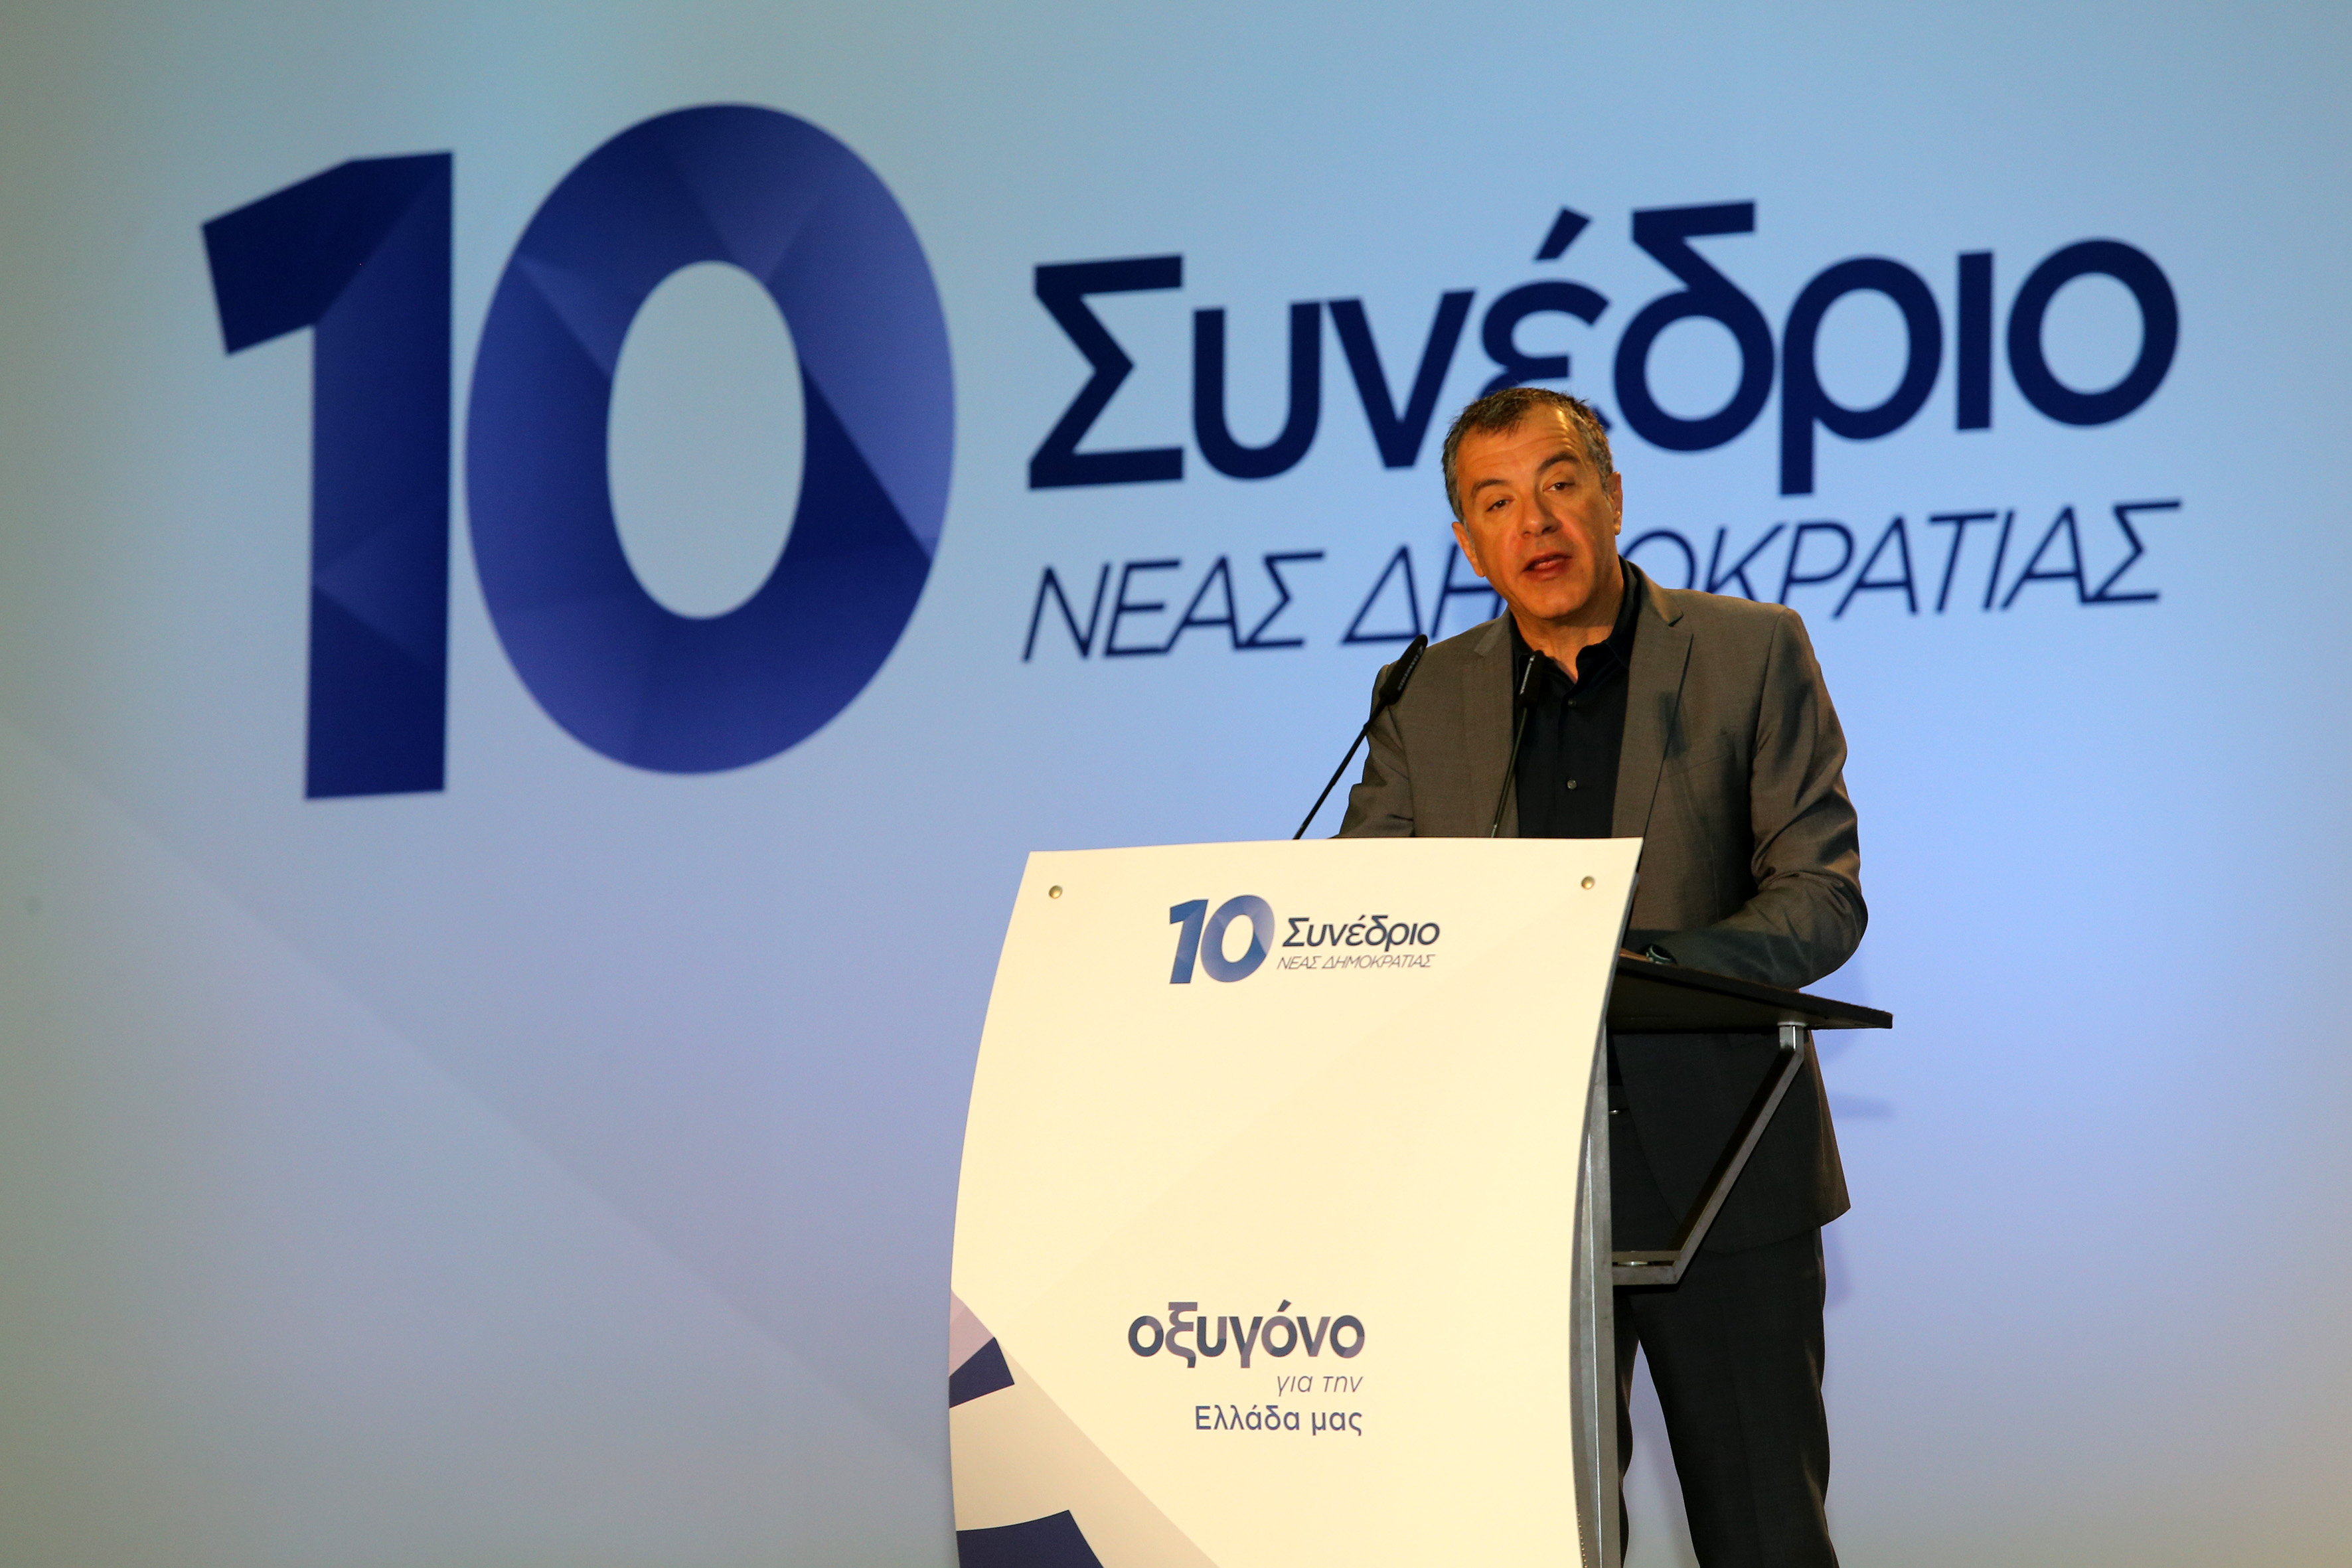 Θεοδωράκης στο συνέδριο: Ελπίζω να αλλάξετε τη ΝΔ